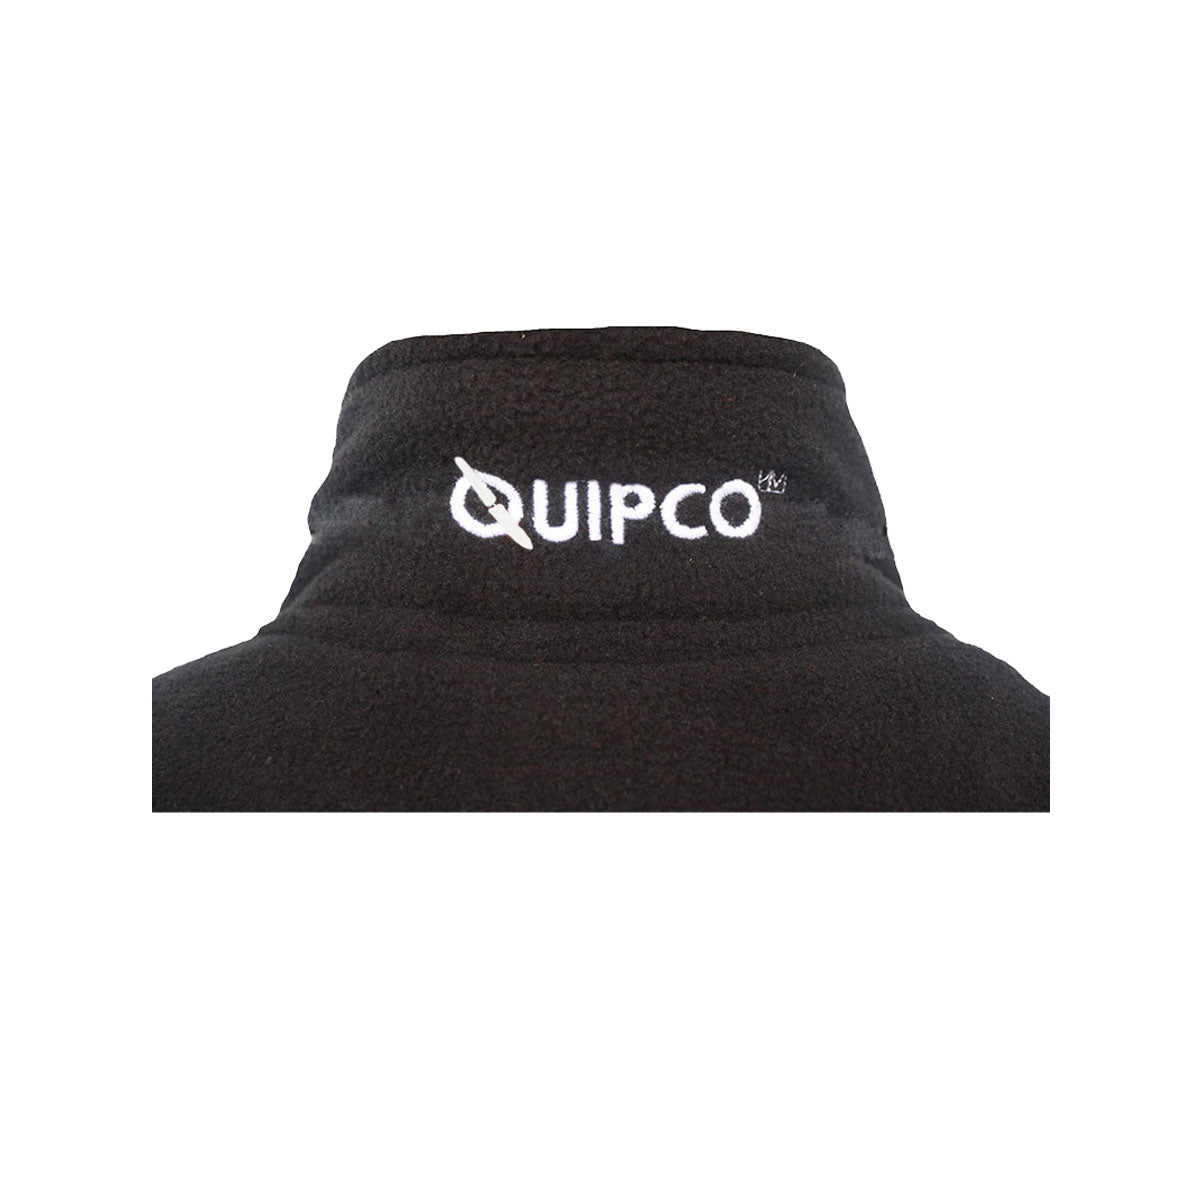 QuipCo Tundra 100 Fleece Warm Jacket (Black) - Outdoor Travel Gear 5